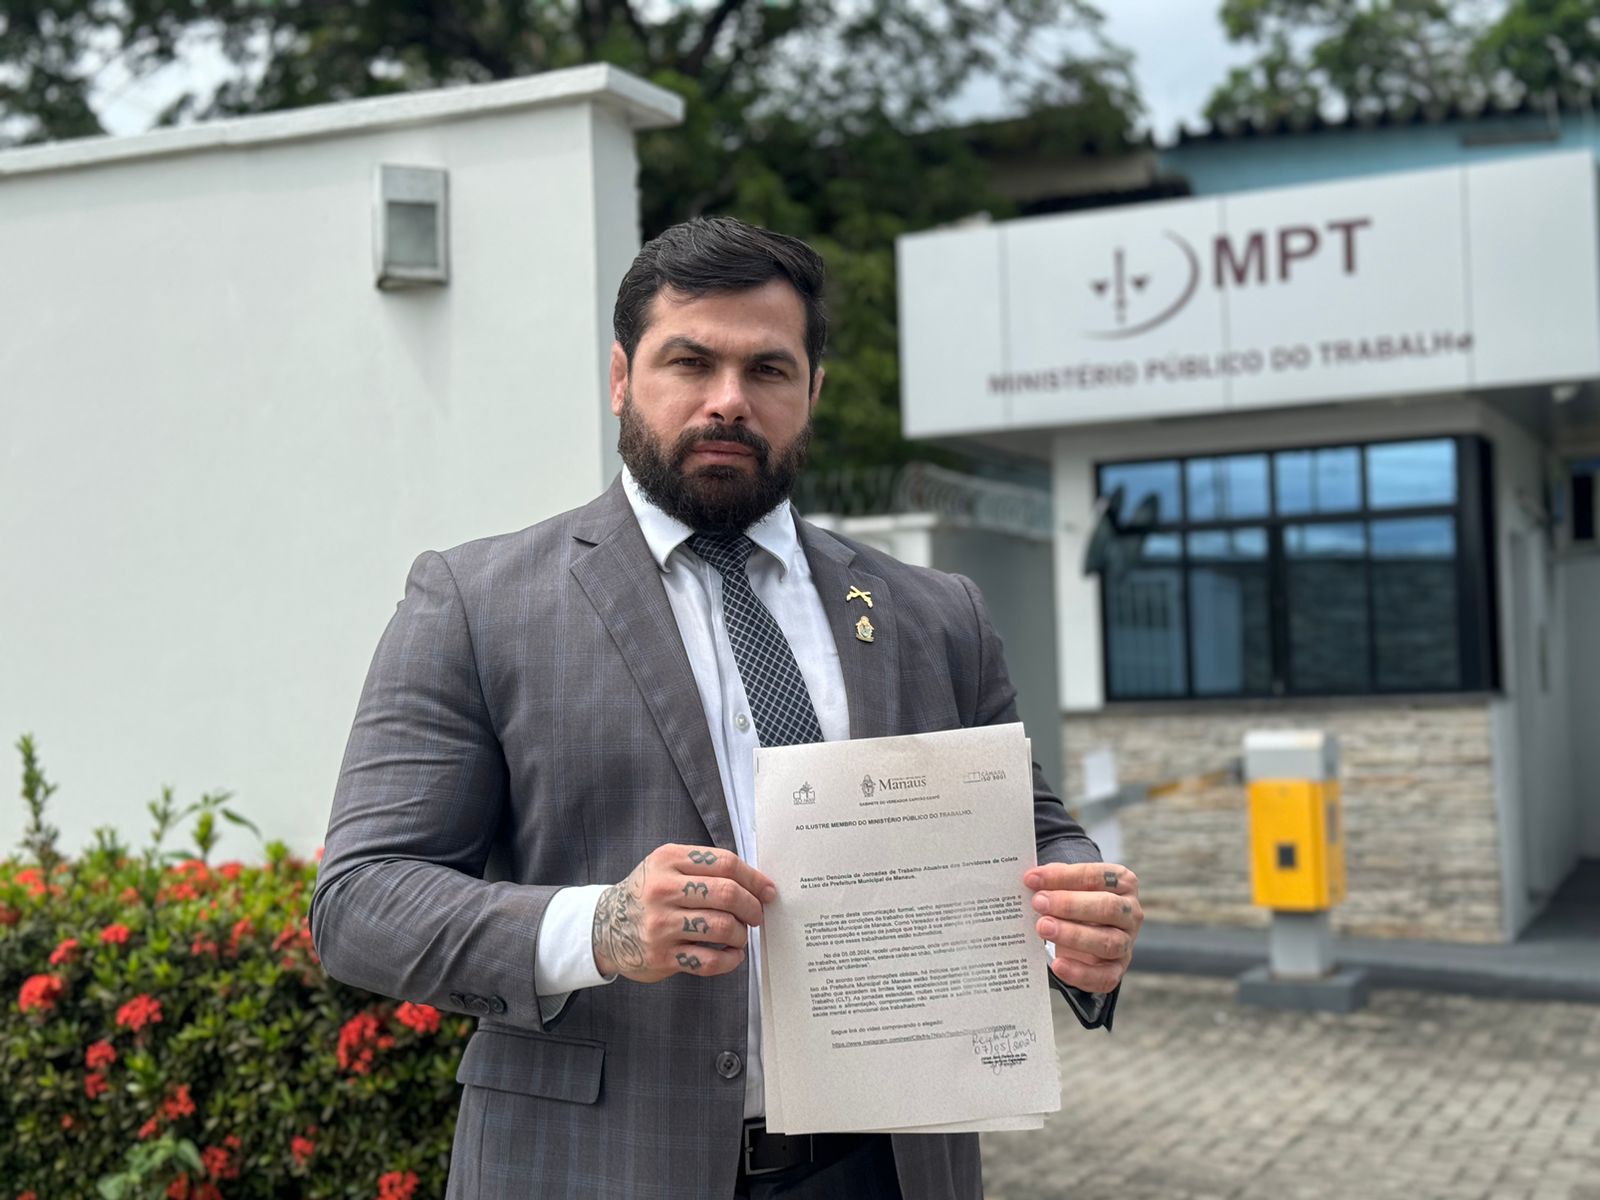 Após discurso, Carpê formaliza denúncia de exploração de garis ao Ministério Público do Trabalho